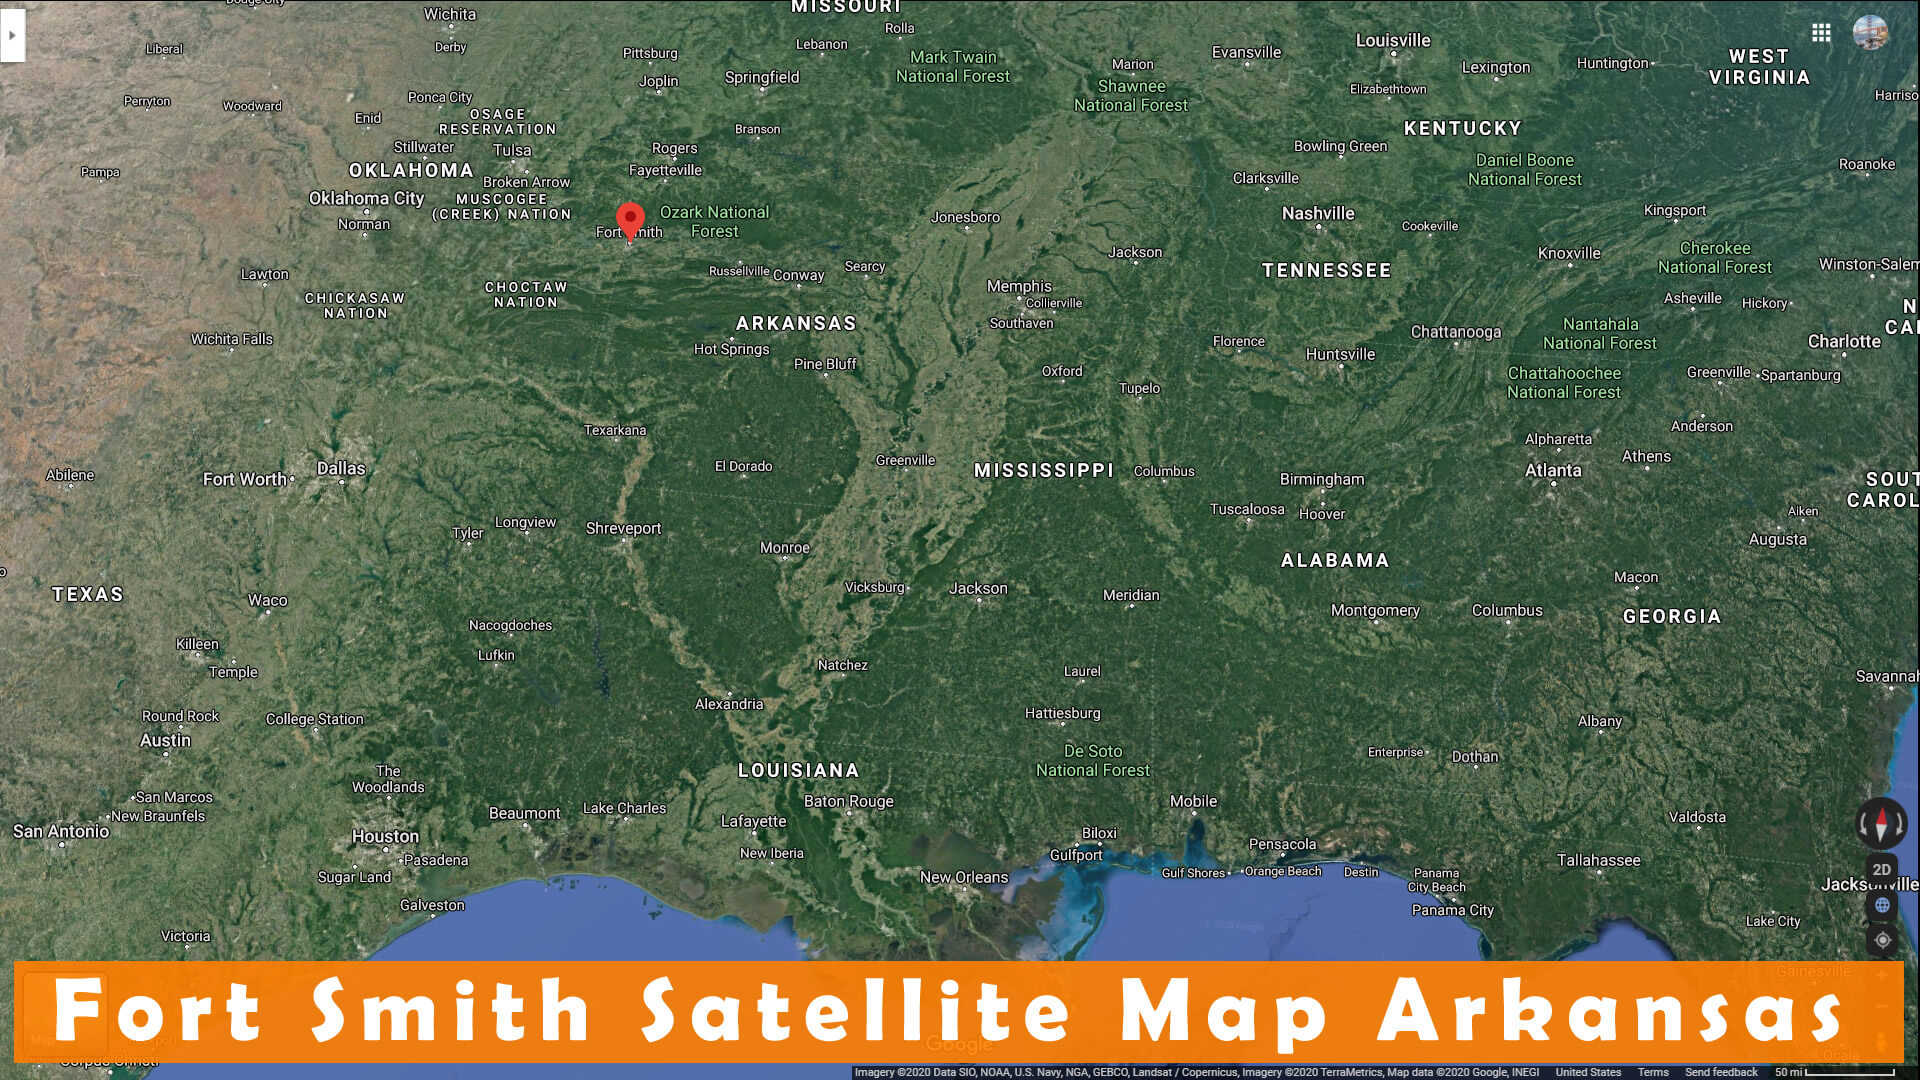 Fort Smith Satellite Map Arkansas